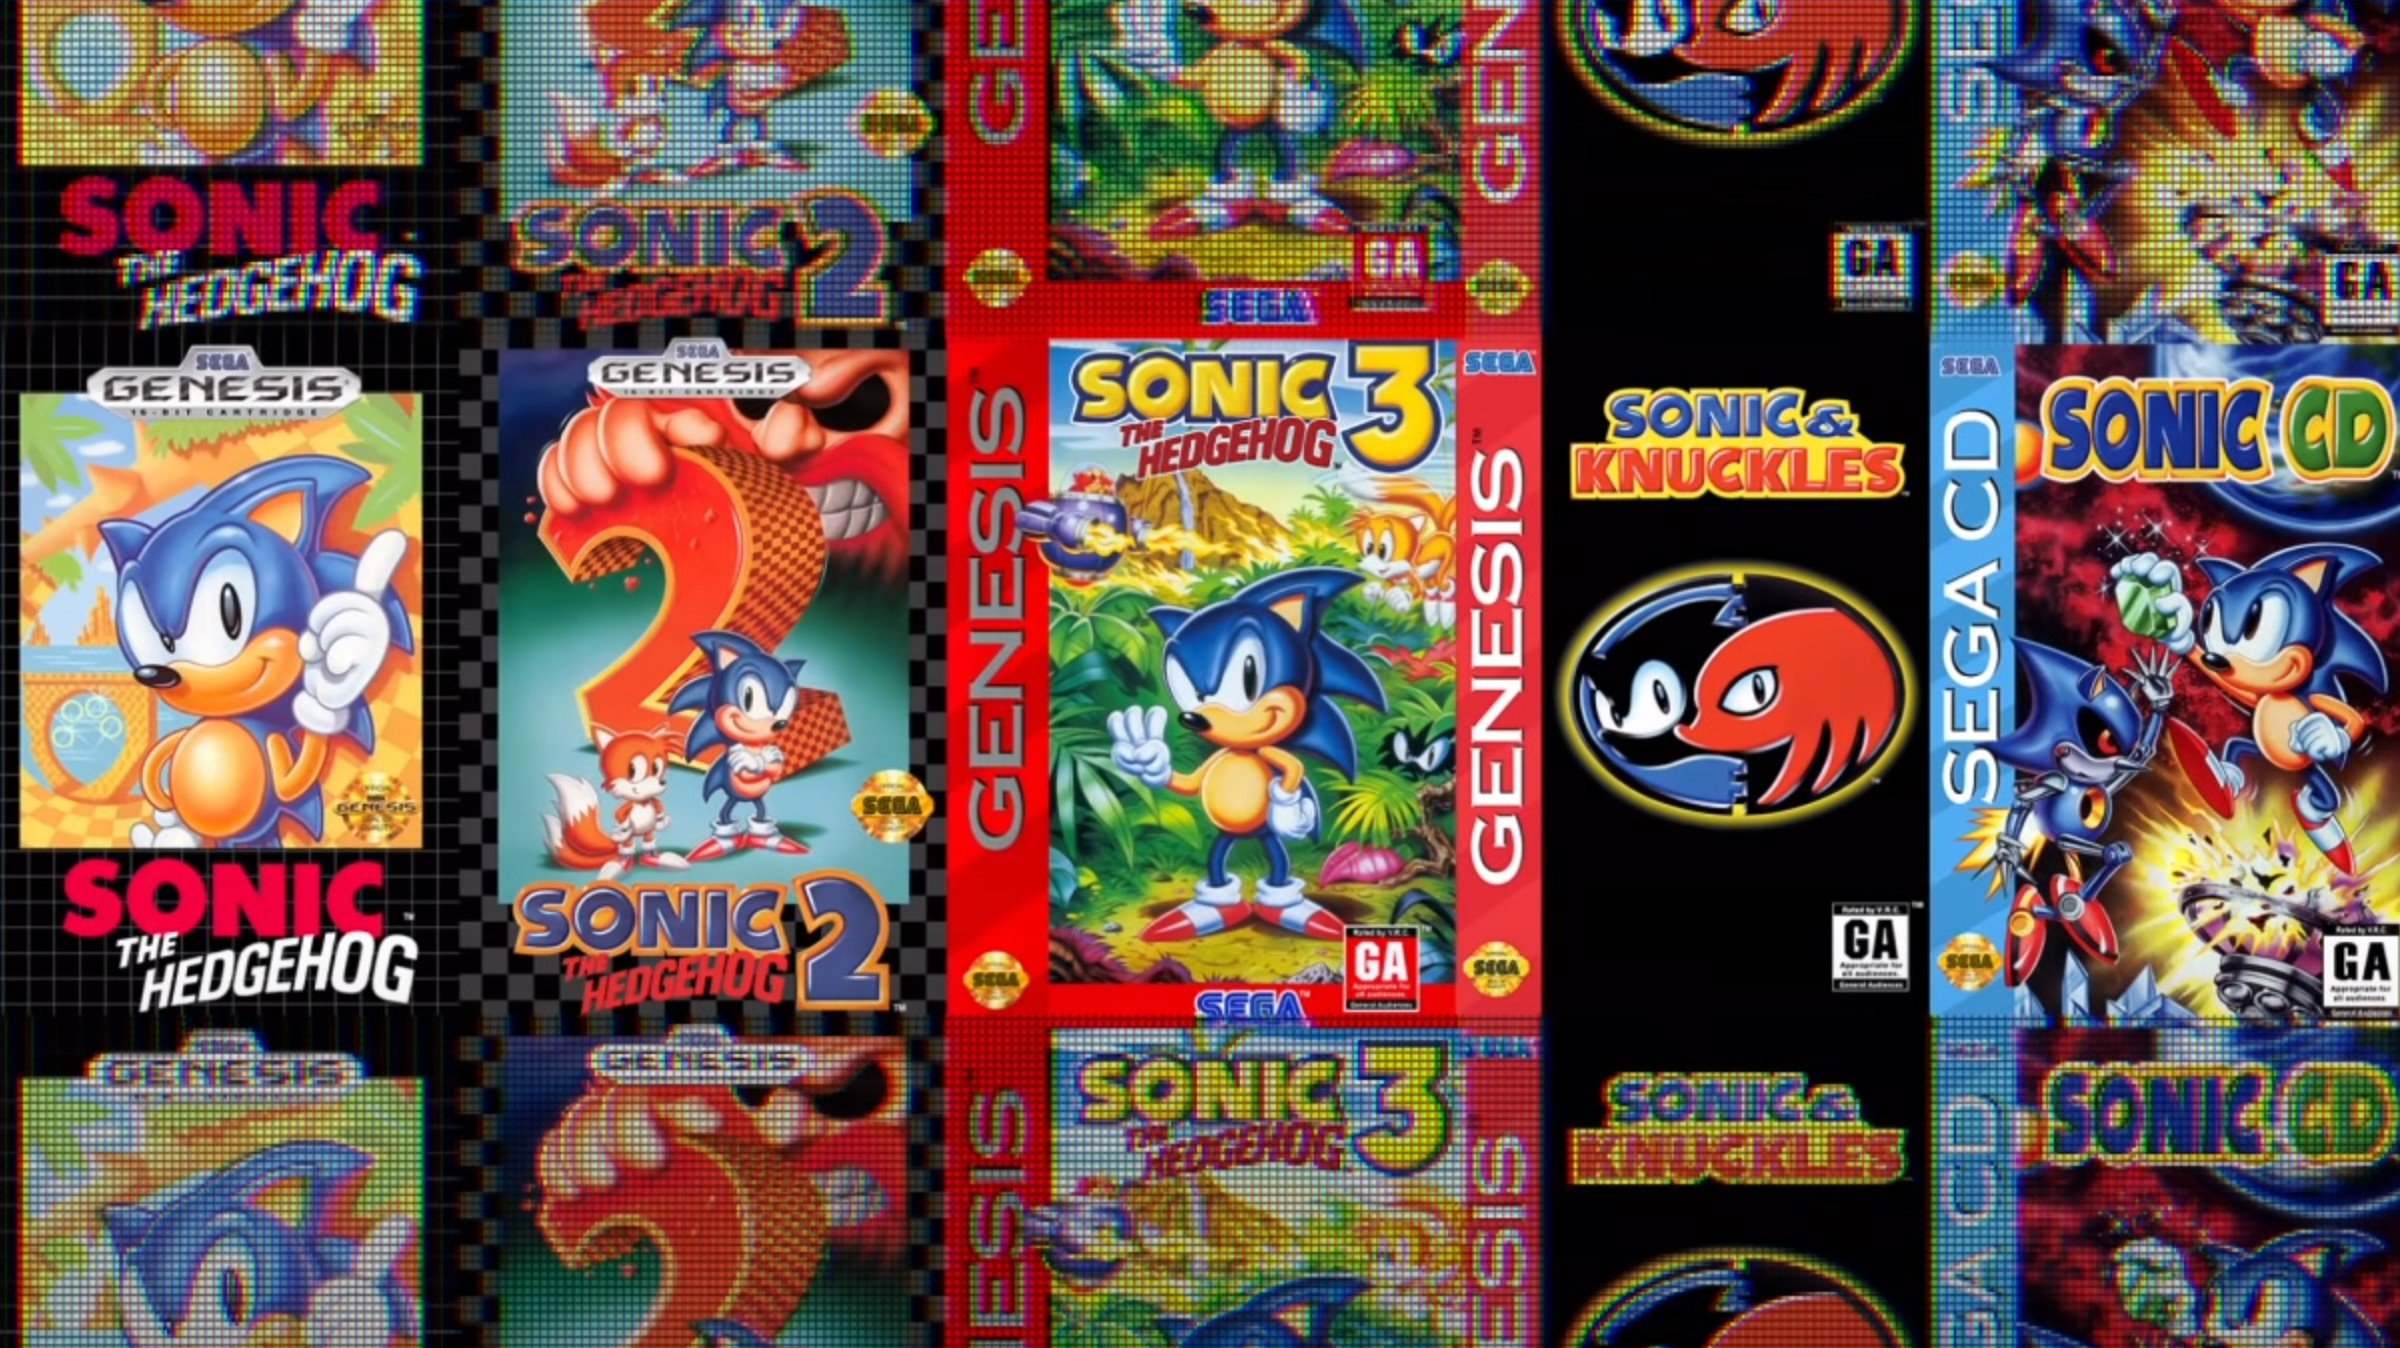 Sonic Origins - một bộ sưu tập quý giá các trò chơi video truyền thống của Sonic. Hãy đến để khám phá những hình ảnh đỉnh cao của Sonic chiến đấu với Dr. Eggman và giải cứu chú nhím xanh yêu thích của bạn.